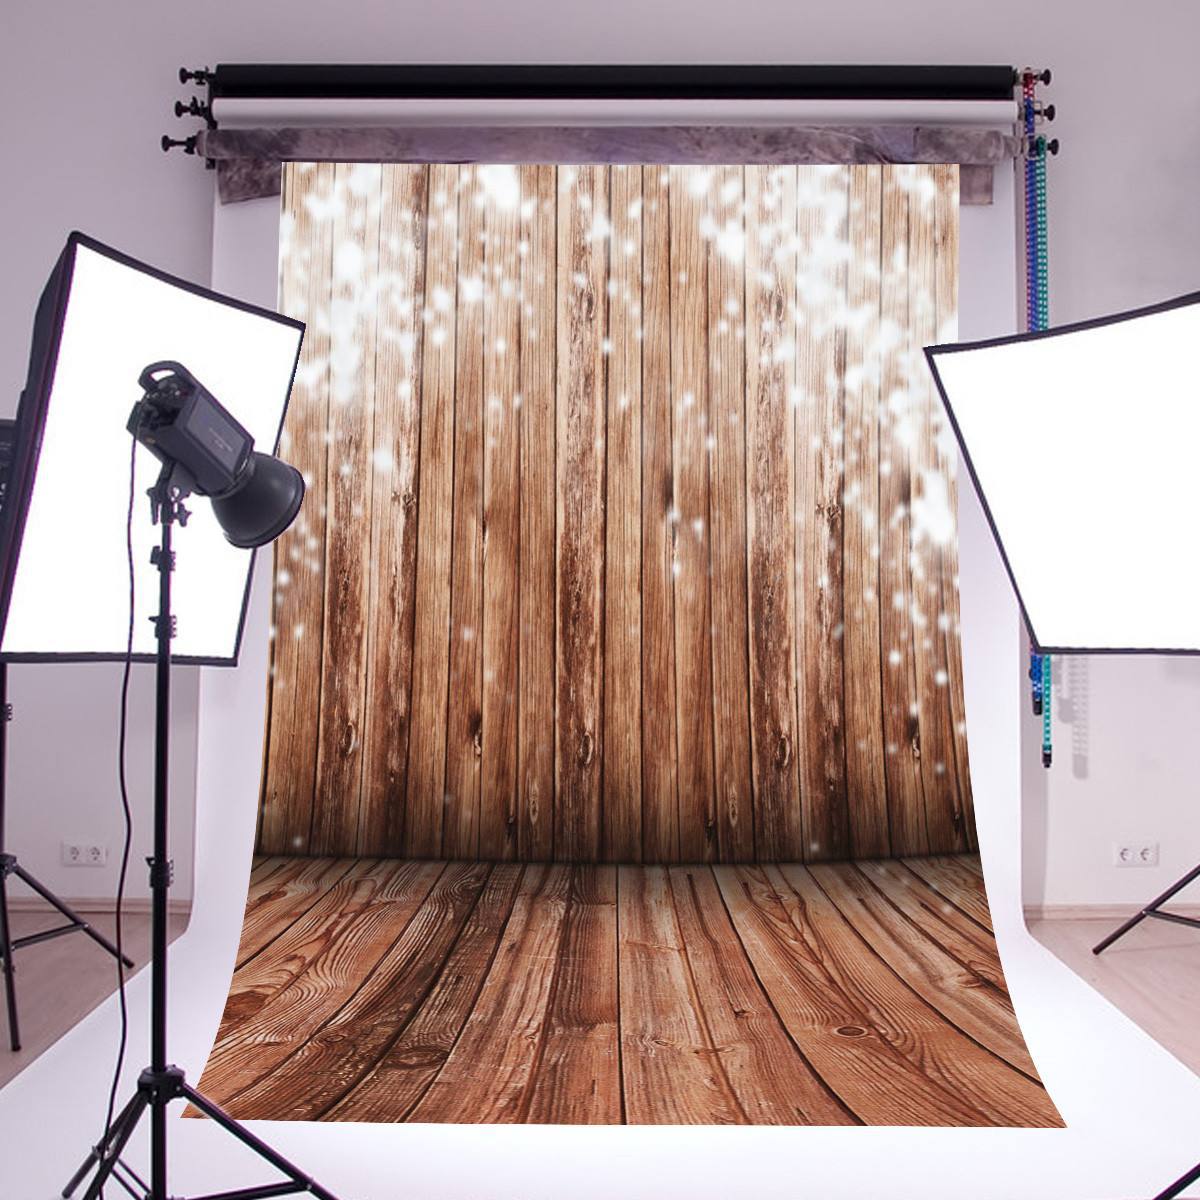 厂家货源新品影楼写真拍照木纹木板摄影背景布速卖通外贸